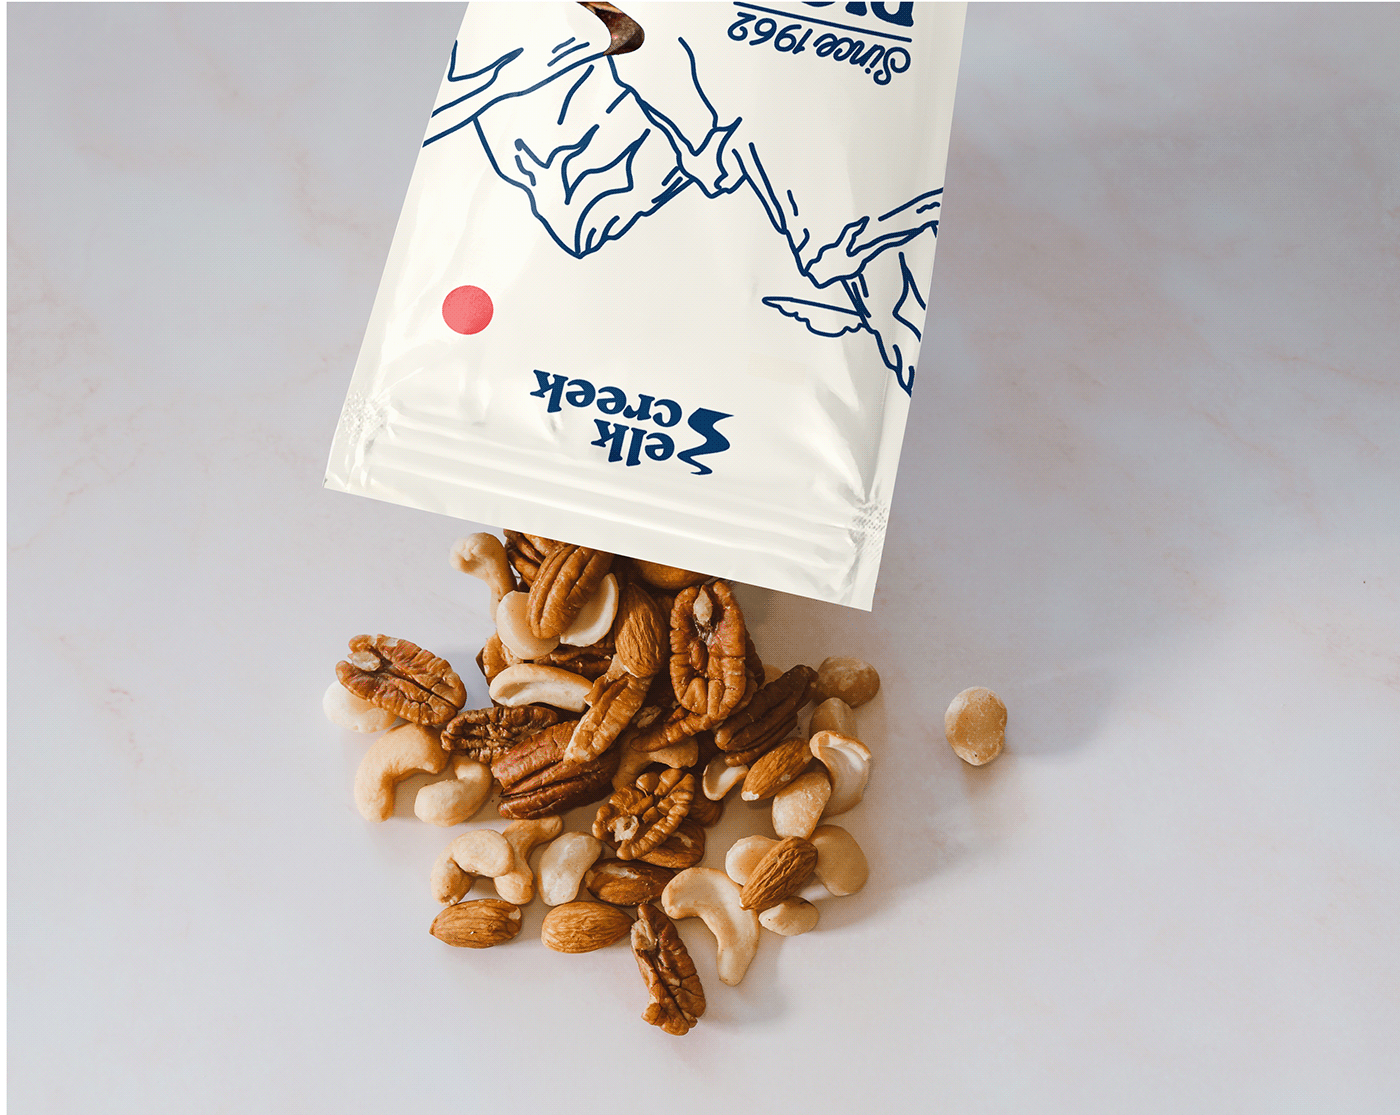 Food Packaging Food Packaging Design healthy food nuts nuts packaging Packaging pouch snack packaging Pouch Packaging